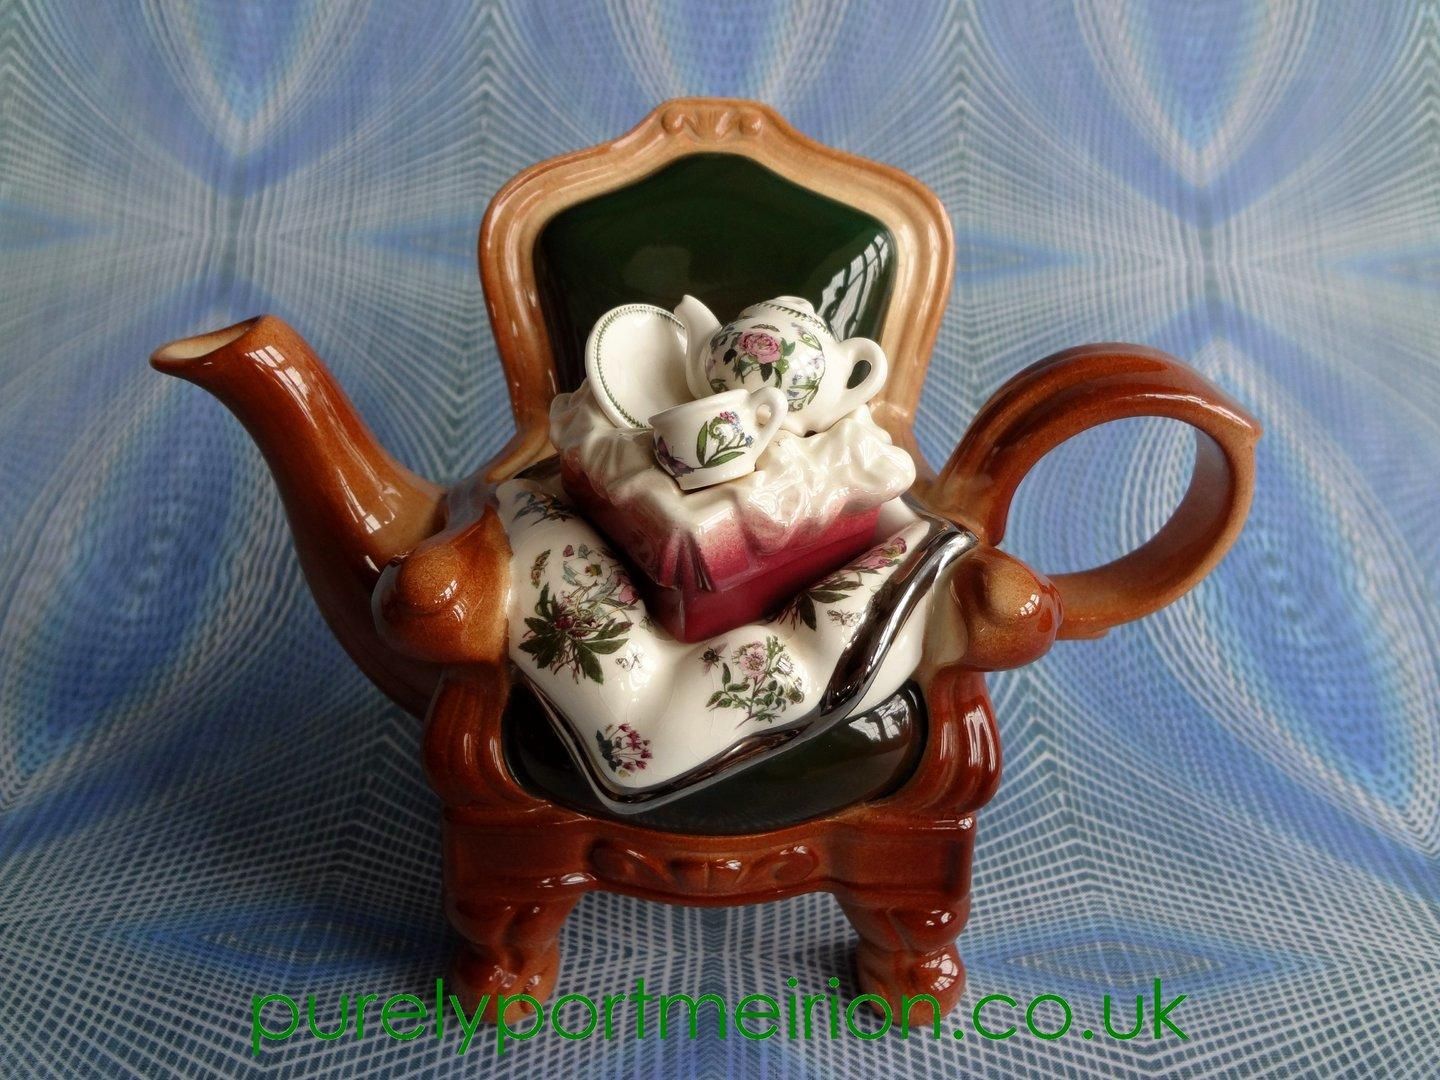 Paul Cardew Portmeirion Medium 'Armchair' Teapot, Tp6 Pertaining To Portmeirion Armchairs (Photo 1 of 15)